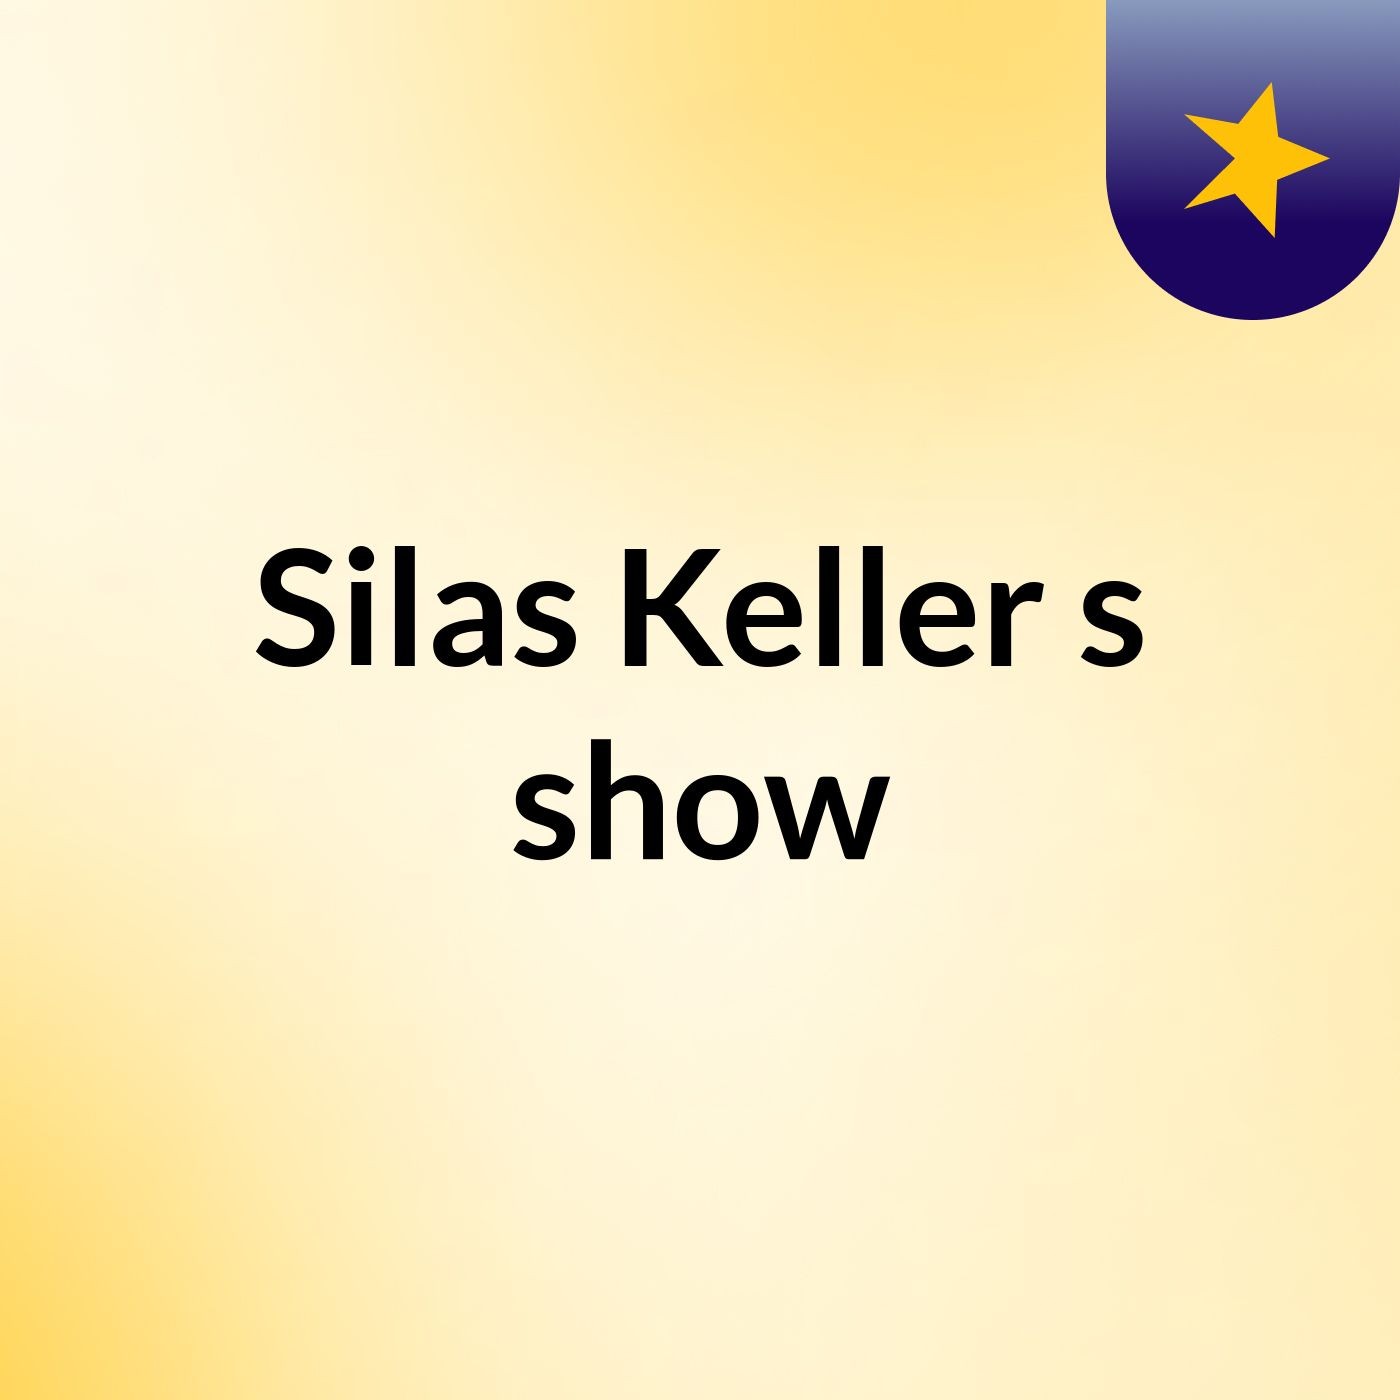 Silas Keller's show